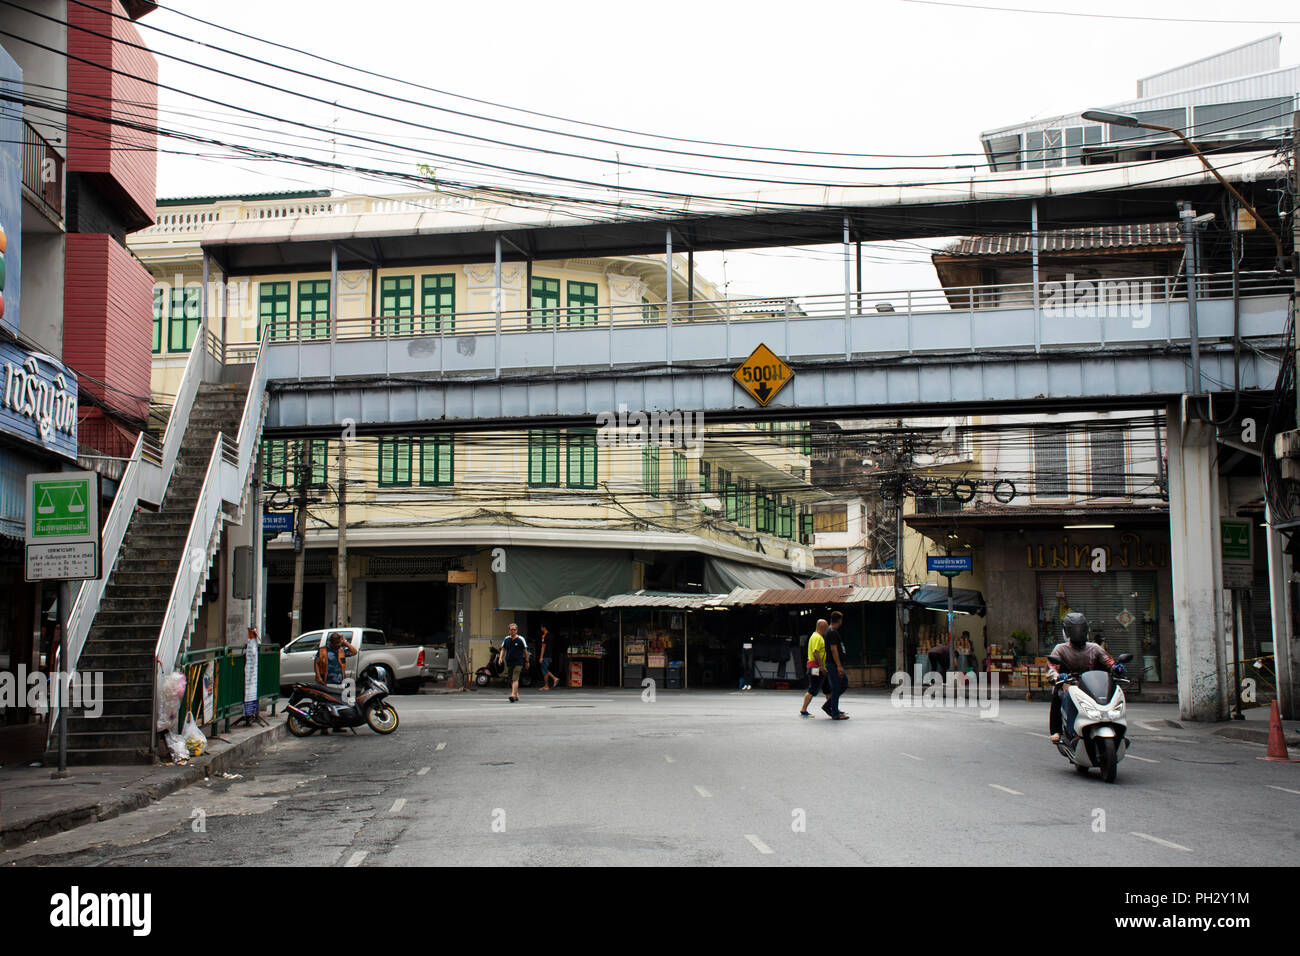 Les thaïs en voiture Voiture et moto ride sur Chak Phet route avec le trafic à Damrong Sathit ou pont Saphan Lek Intersection le 18 avril 2018 à Bang Banque D'Images